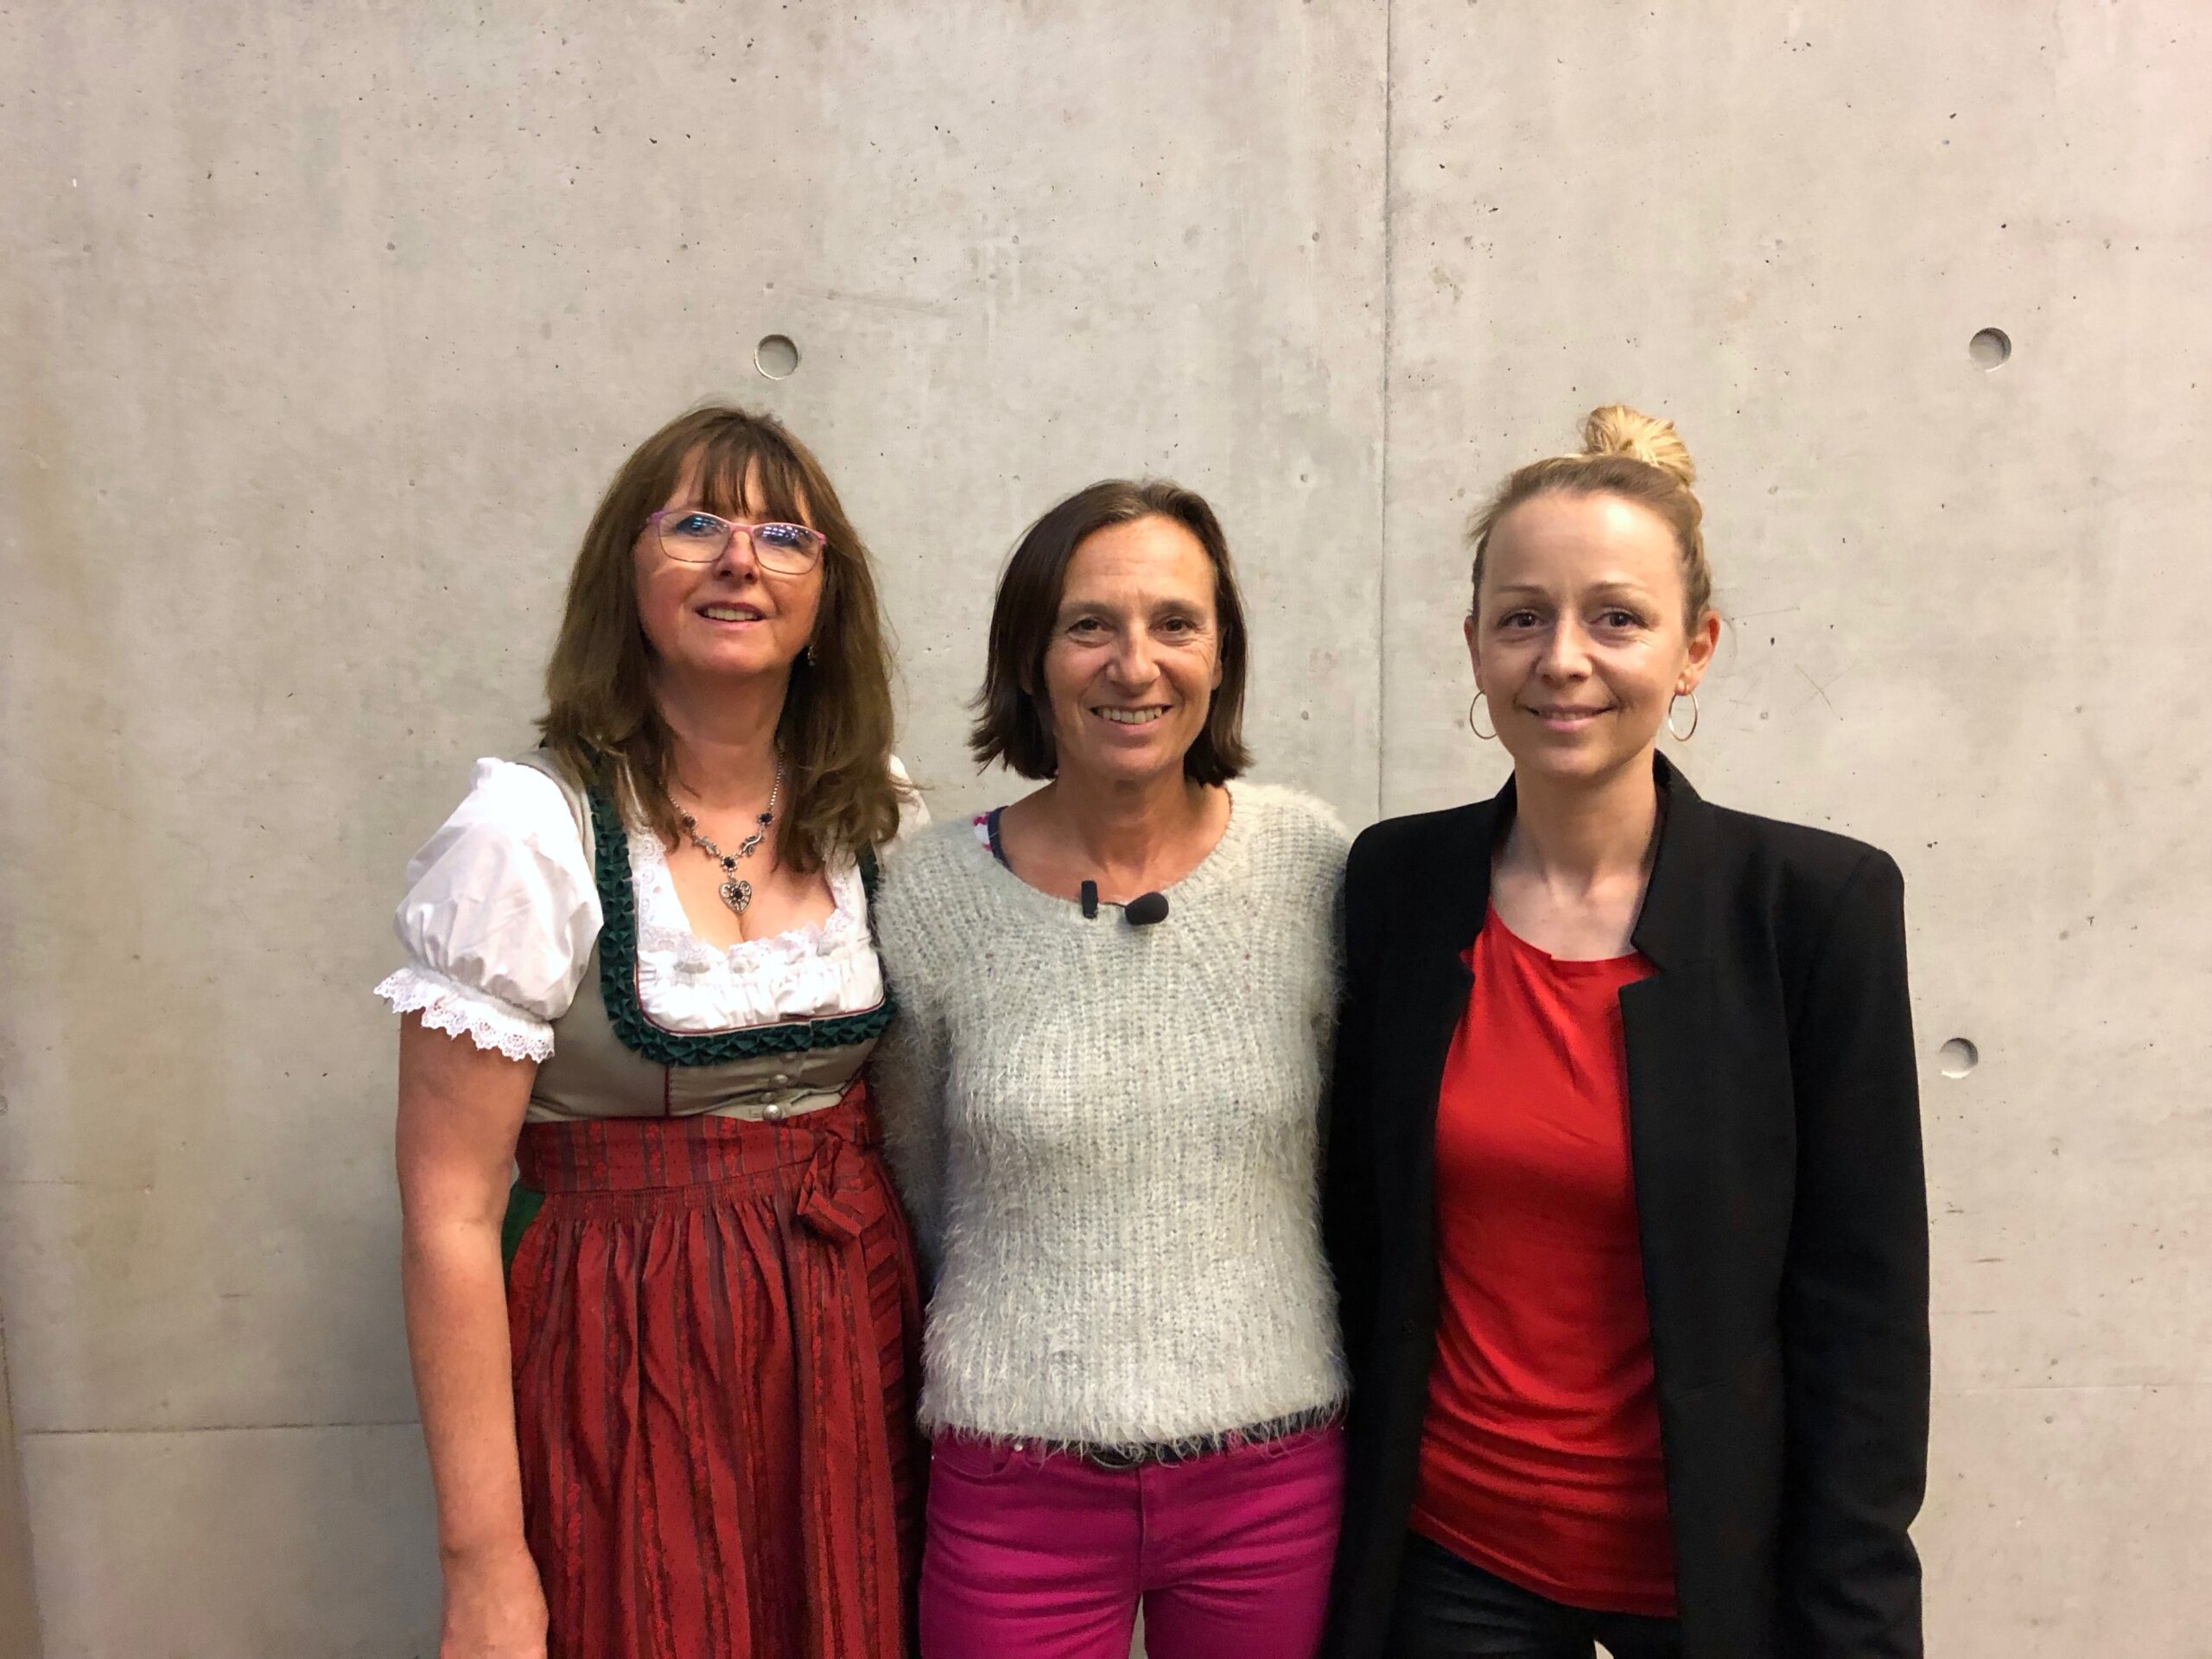 (von links nach rechts): Elisabeth Krenner (stv. Vorsitzendes Salzburger Monitoringausschuss), Karin Astegger (Vorsitzende des Salzburger Monitoringausschusses) und Christine Steger (Vorsitzende des Bundes Monitoringausschusses)